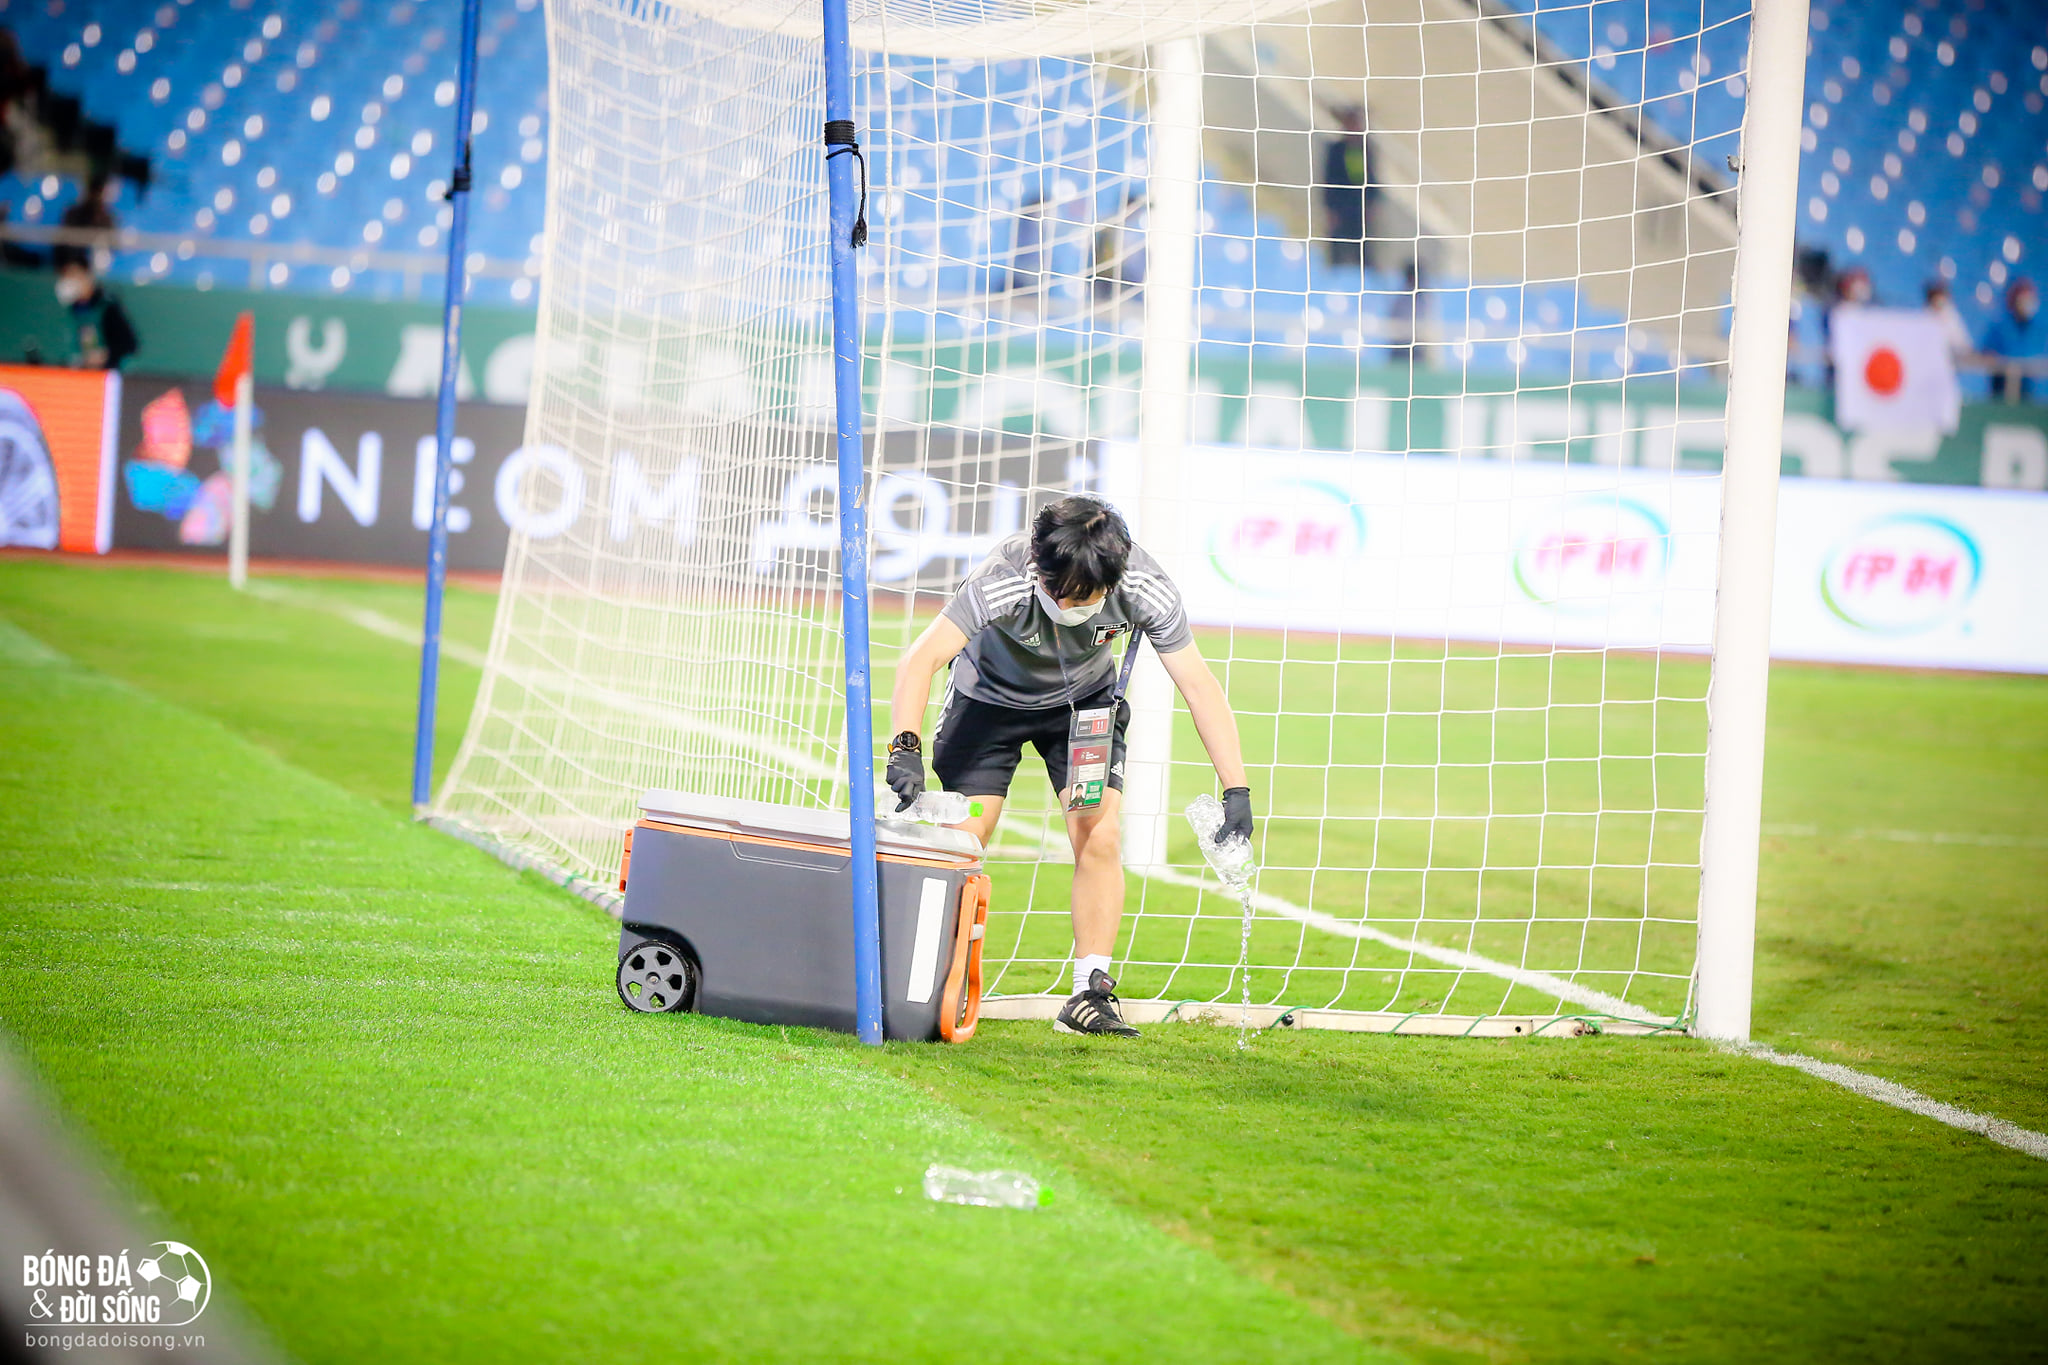 Hành động đẹp: Một thành viên của ĐT Nhật Bản đã đi quanh sân cỏ nhặt hết chai nước mà hai đội bỏ sót sau trận đấu - ảnh 5